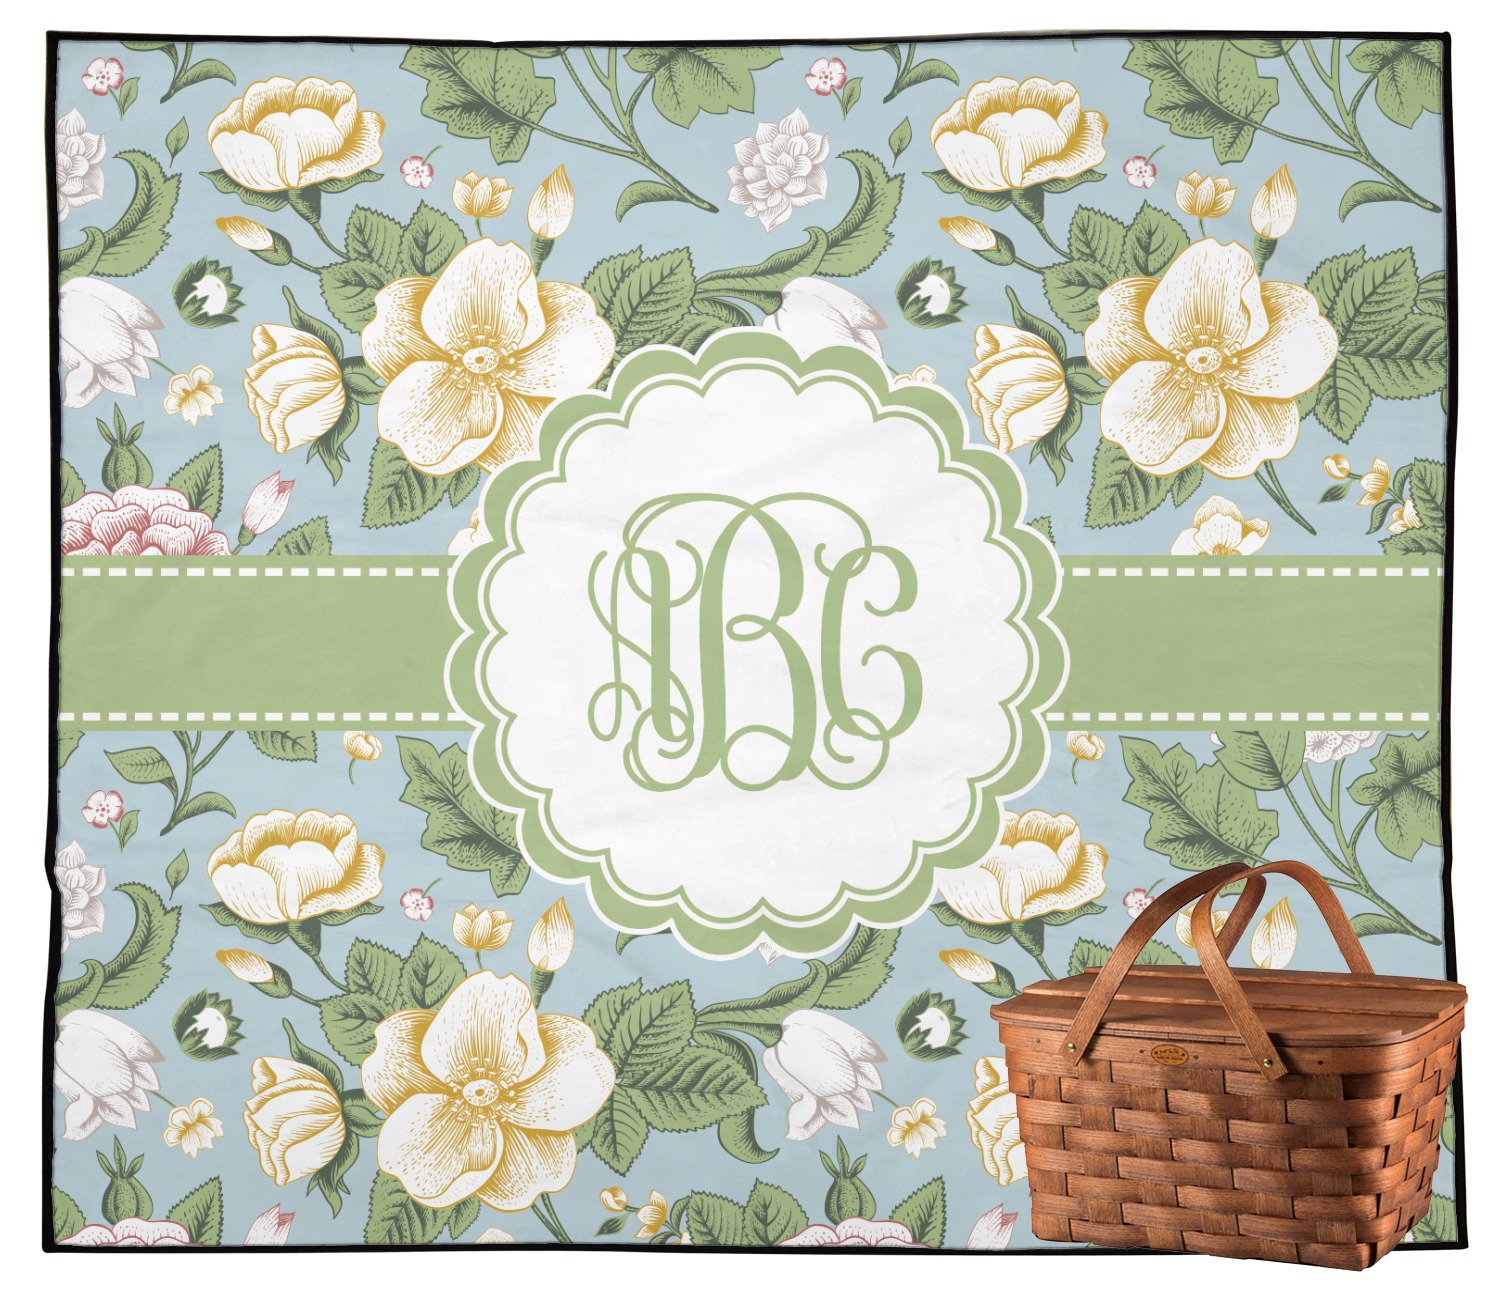 floral picnic blanket